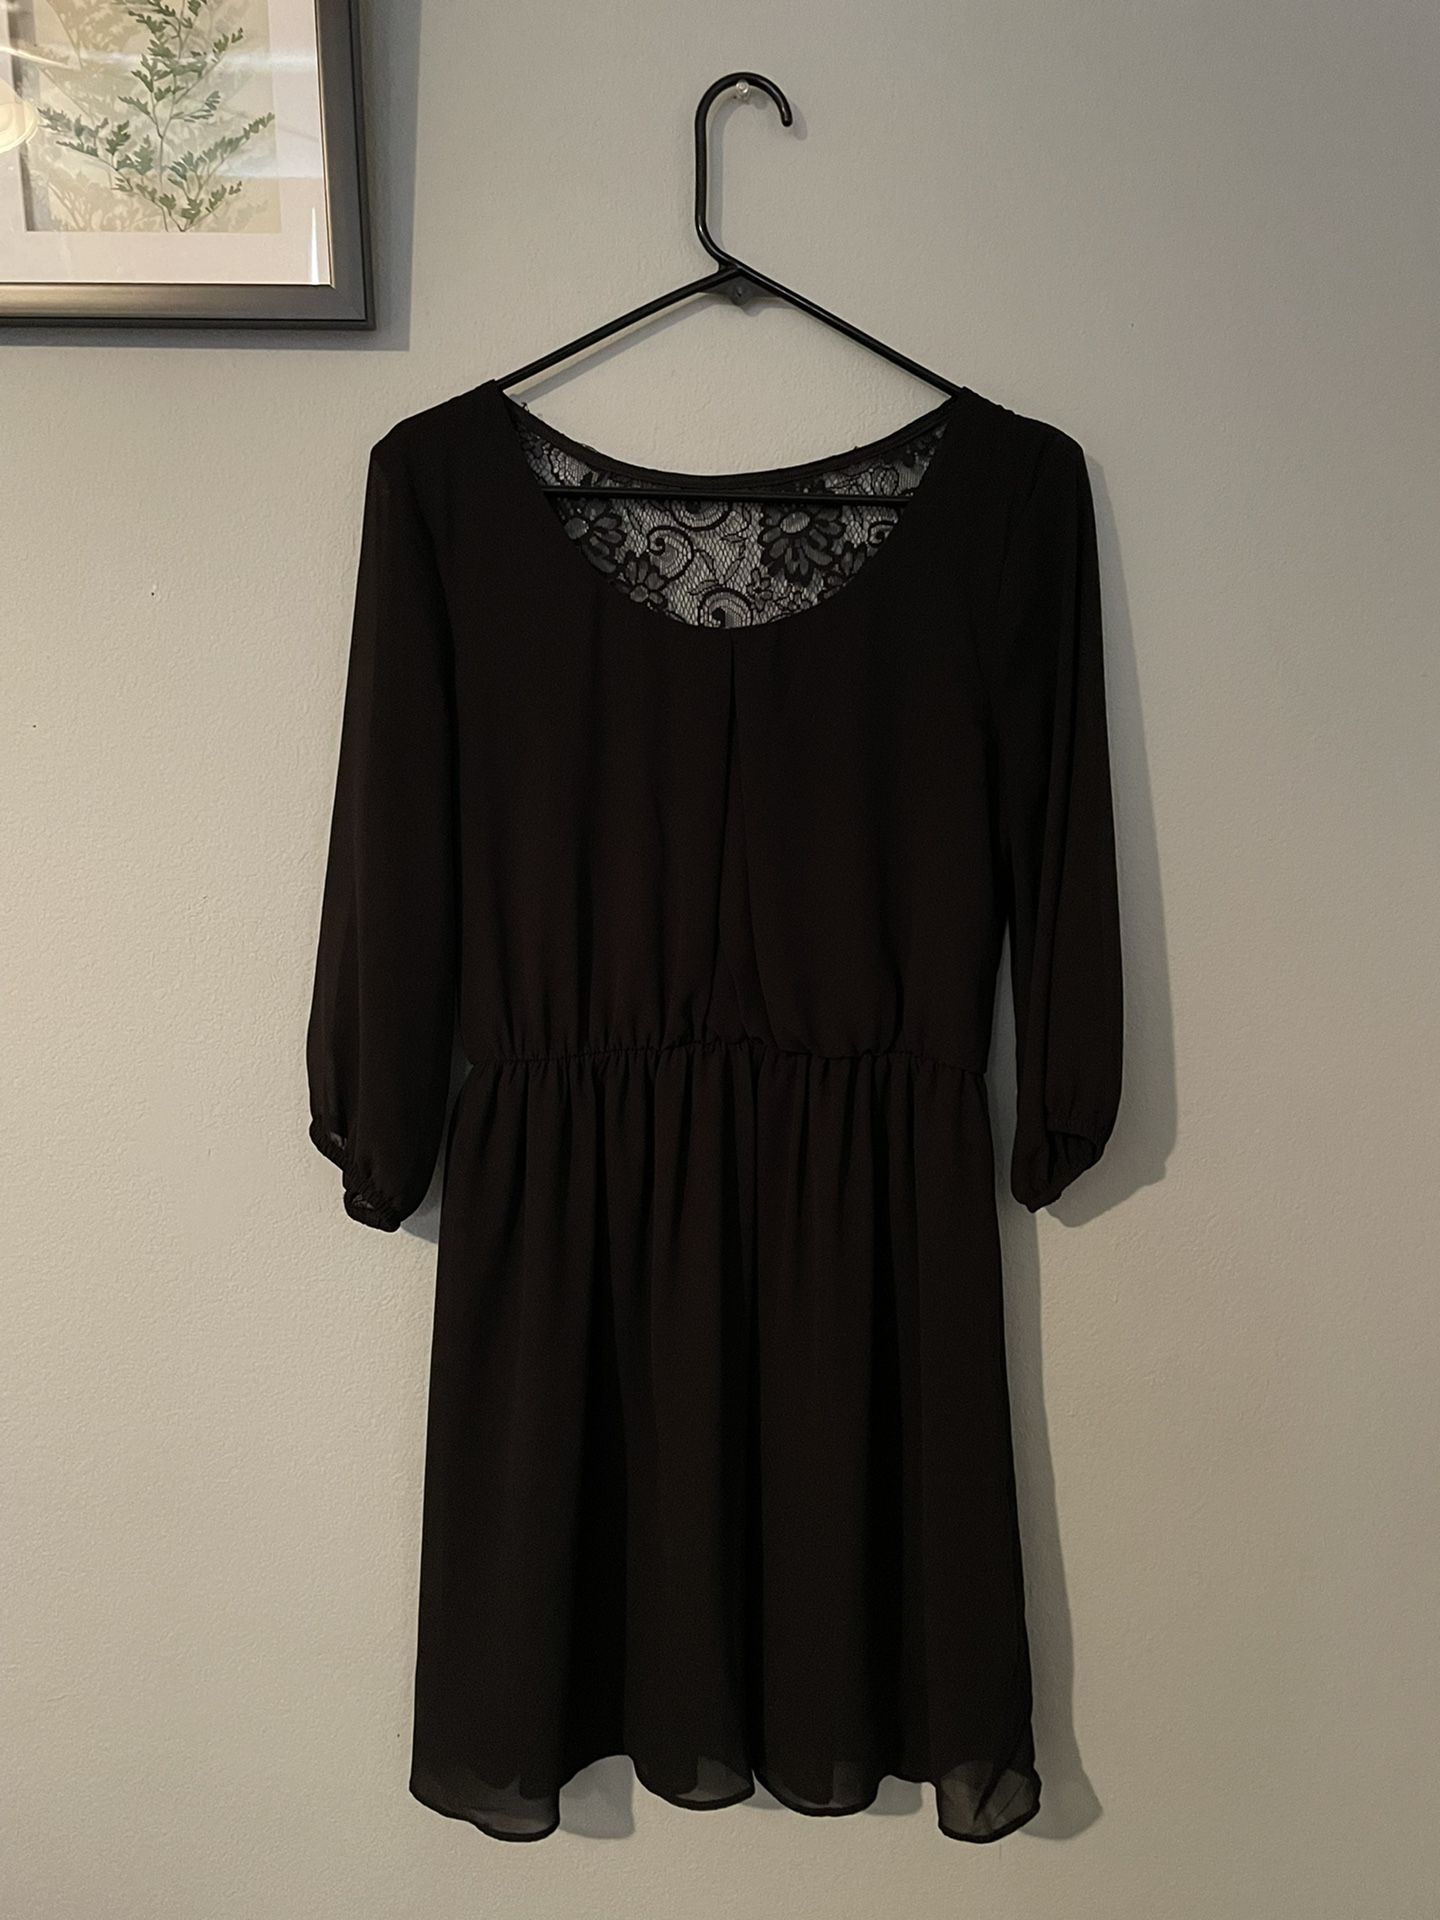 Medium Black Short Dress